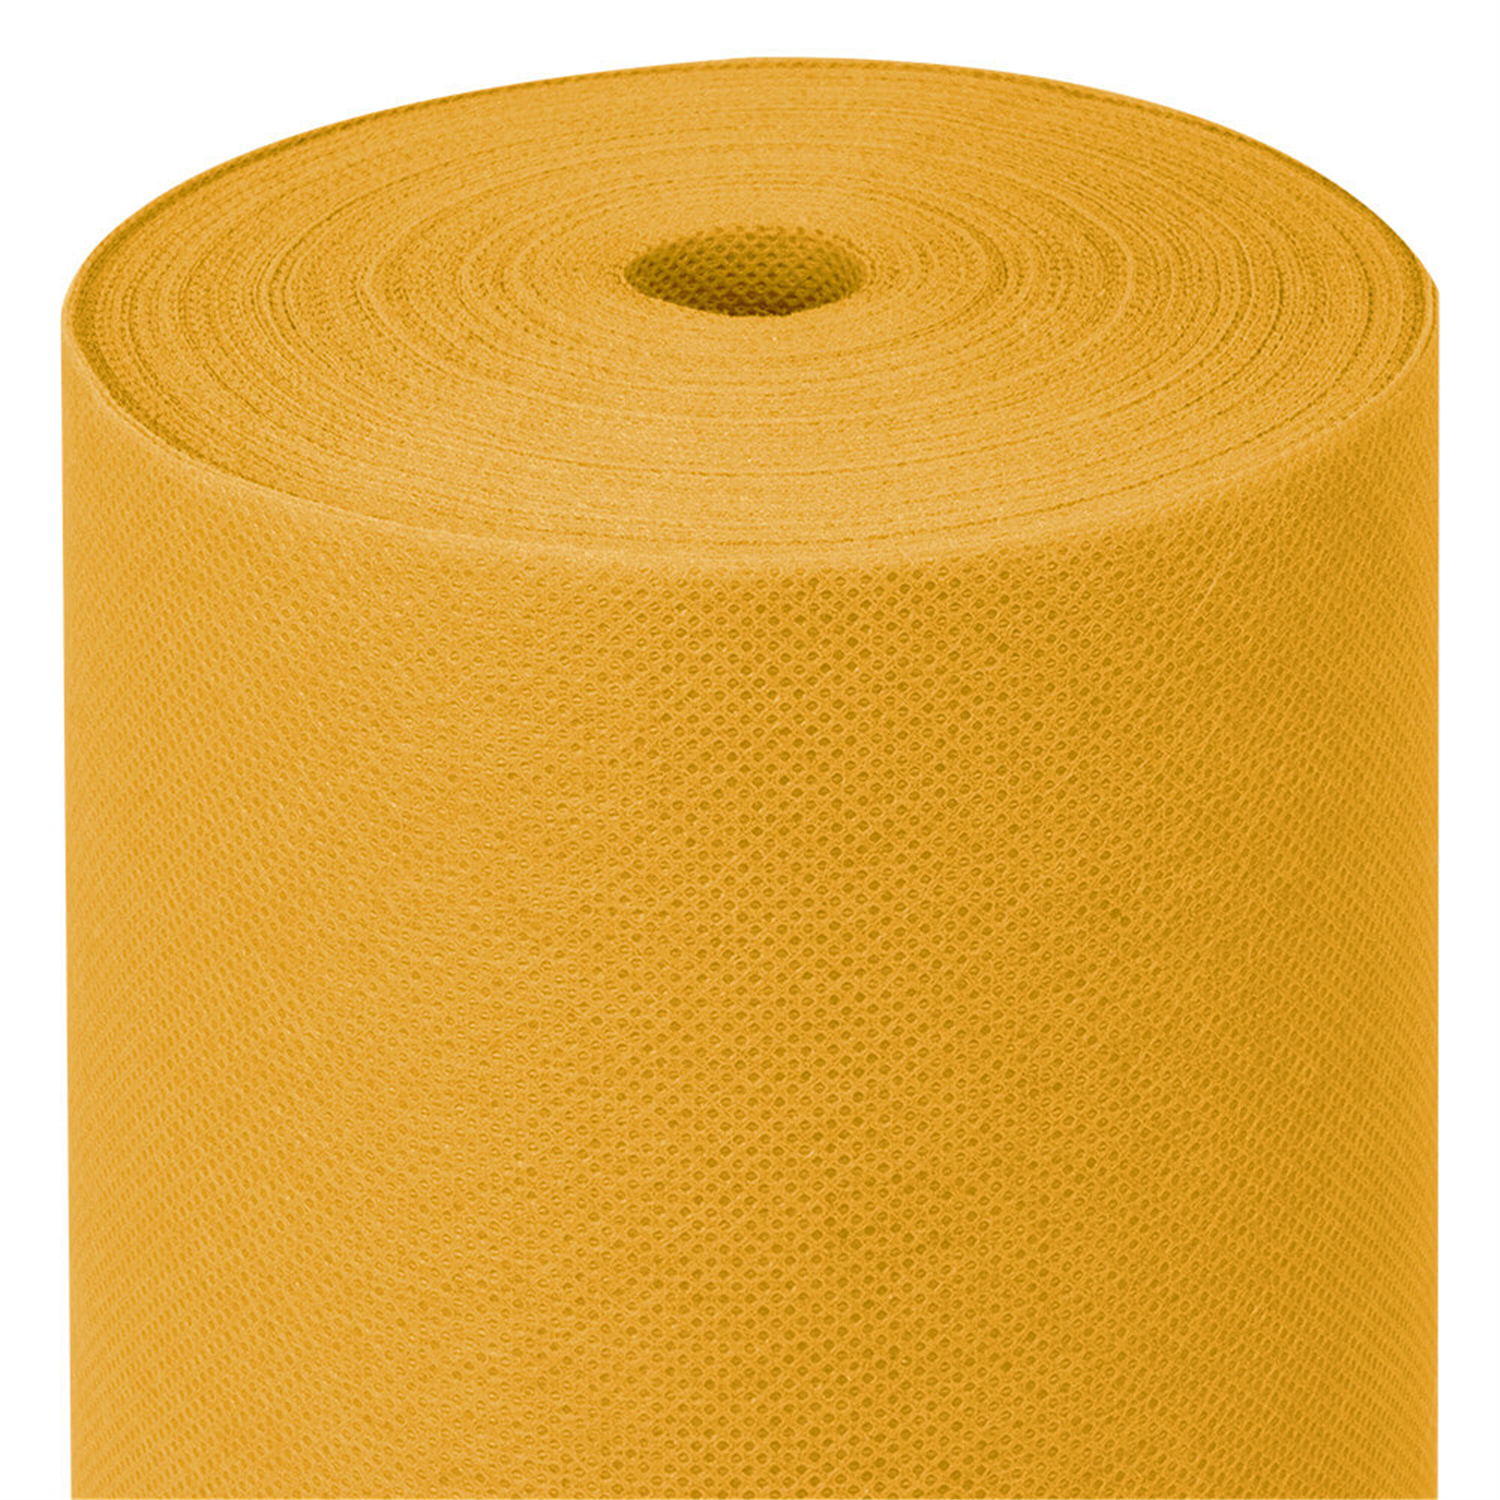 rouleau-nappe-papier-intisse-spunbond-predecoupe-jaune-1m20x50m40-prosaveurs